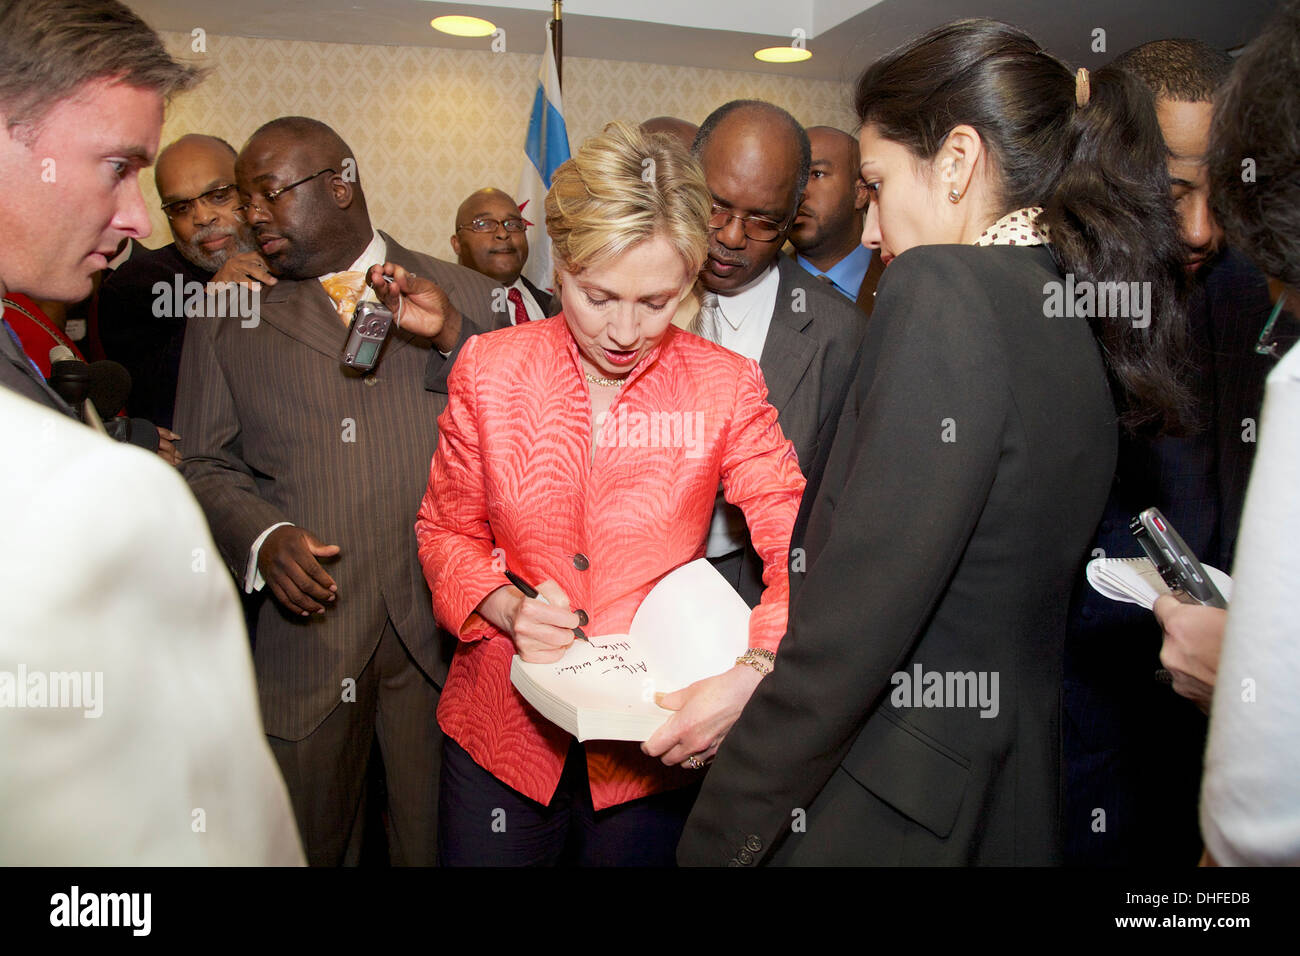 Le sénateur Hillary Clinton autographes livre. Huma Abedin à droite. Chicago Mai 2007. Banque D'Images